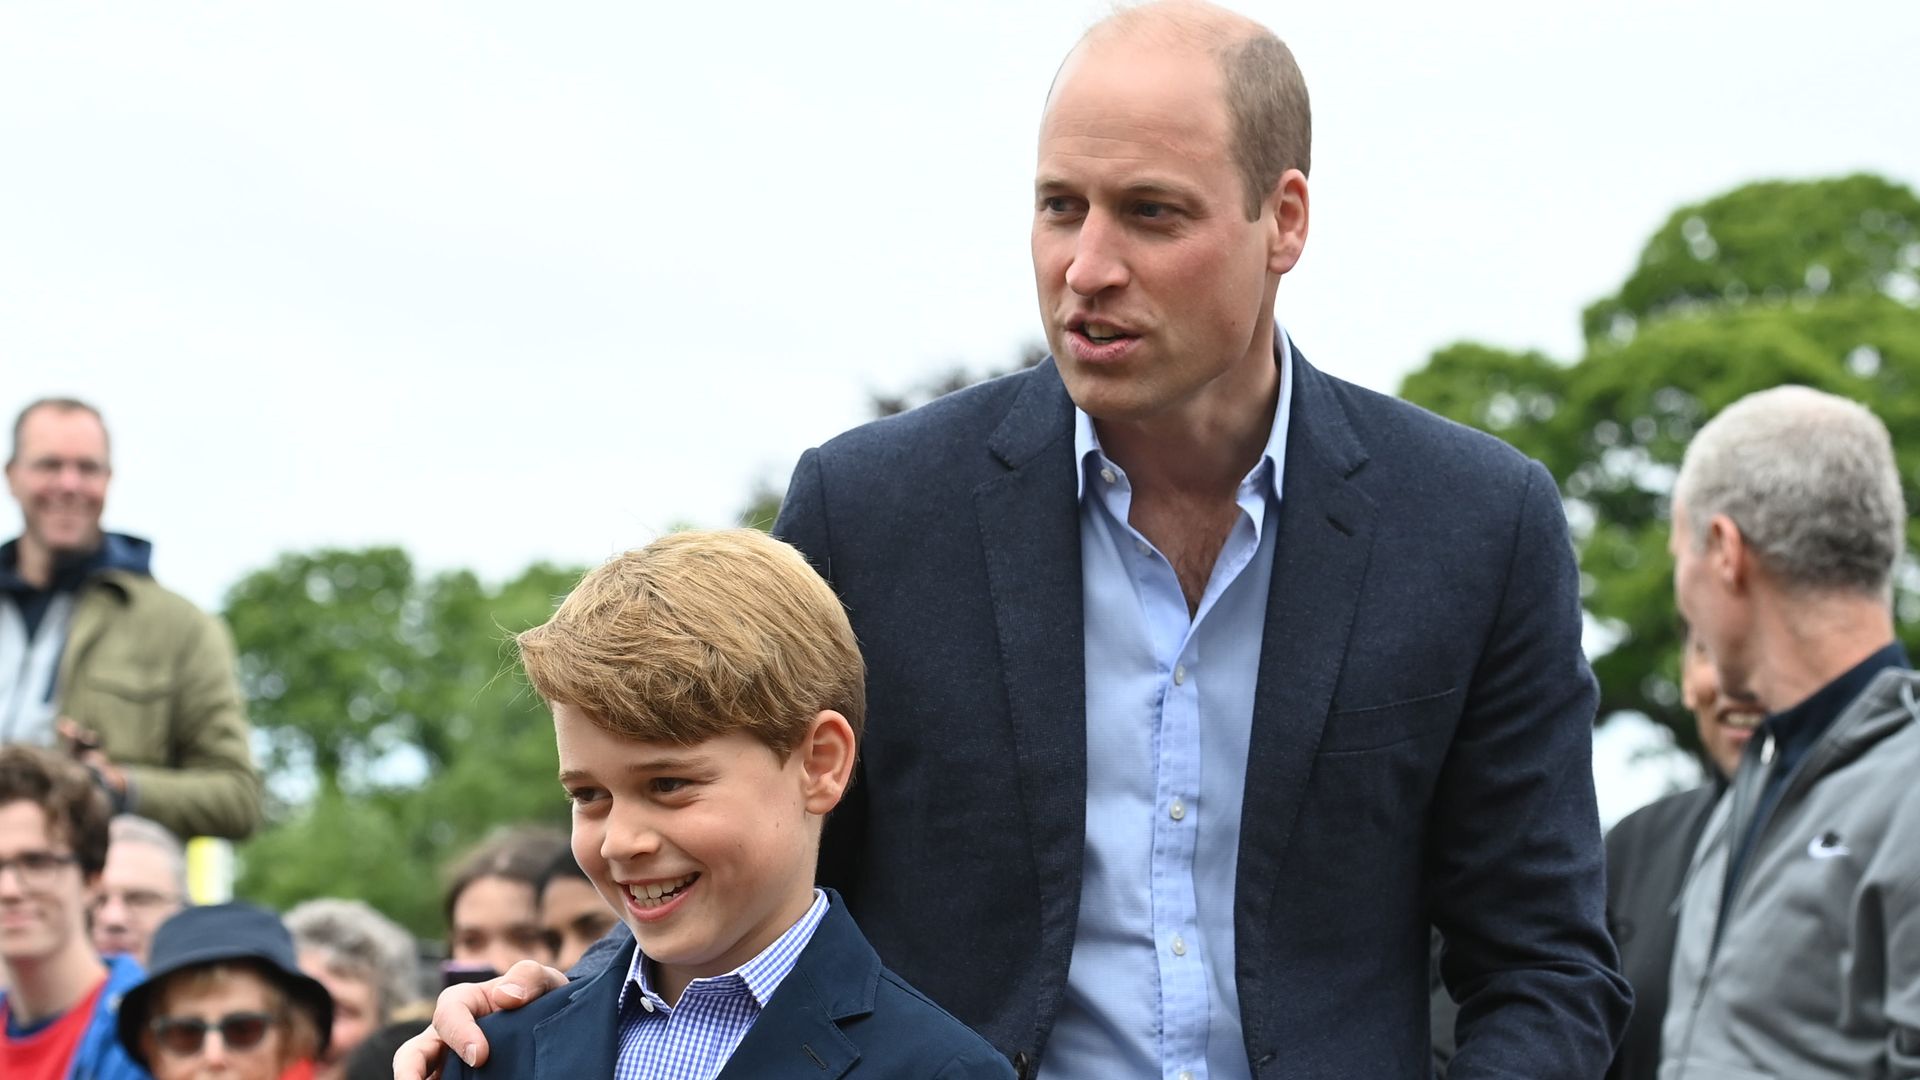 Prince William standing behind Prince George